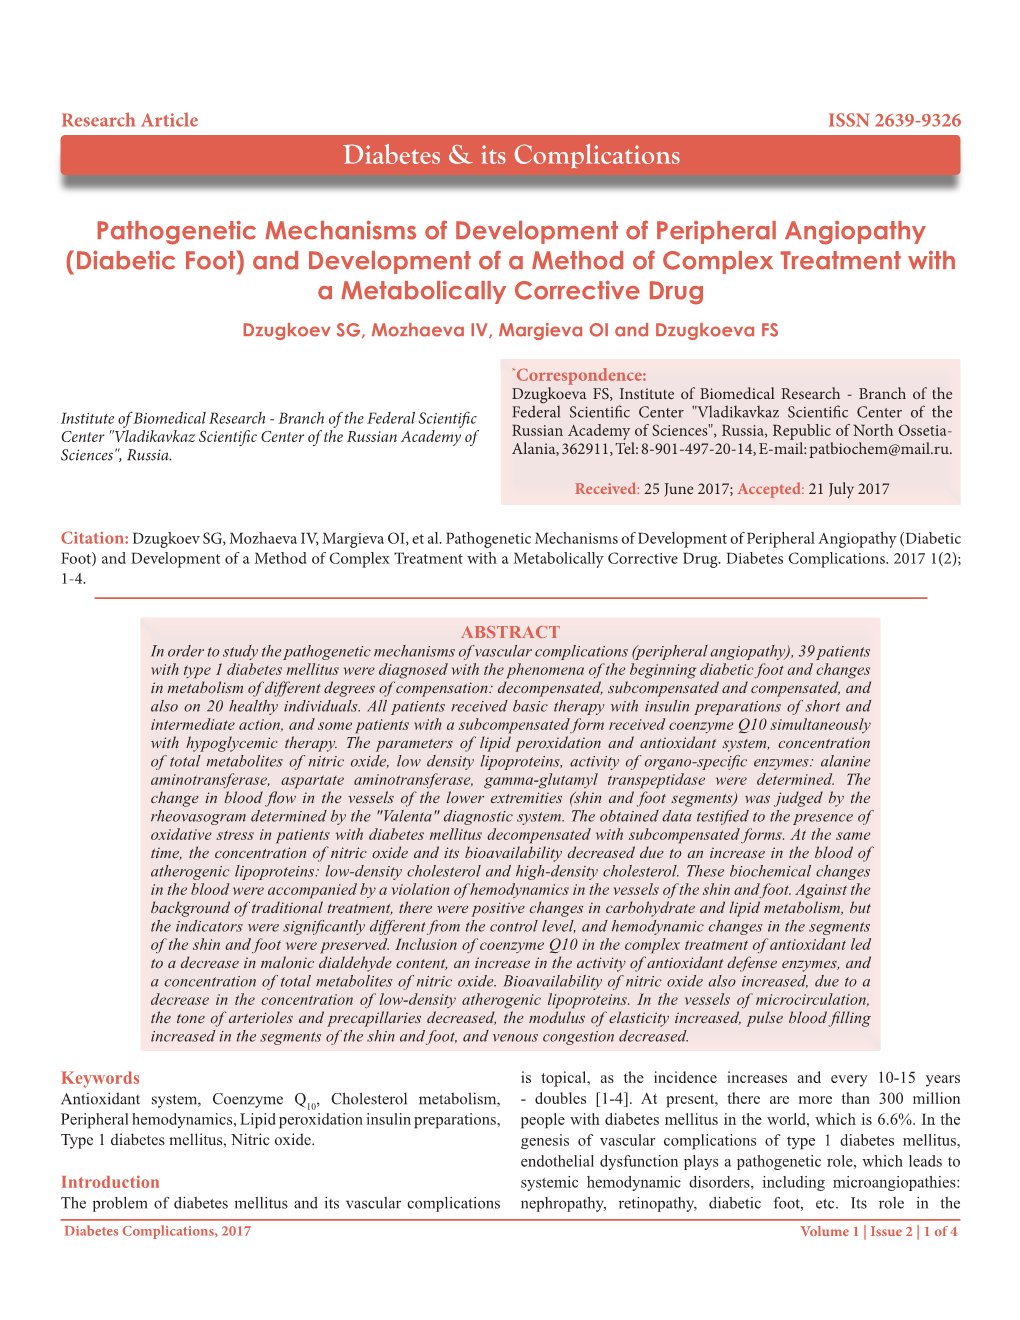 Diabetic Foot) and Development of a Method of Complex Treatment with a Metabolically Corrective Drug Dzugkoev SG, Mozhaeva IV, Margieva OI and Dzugkoeva FS